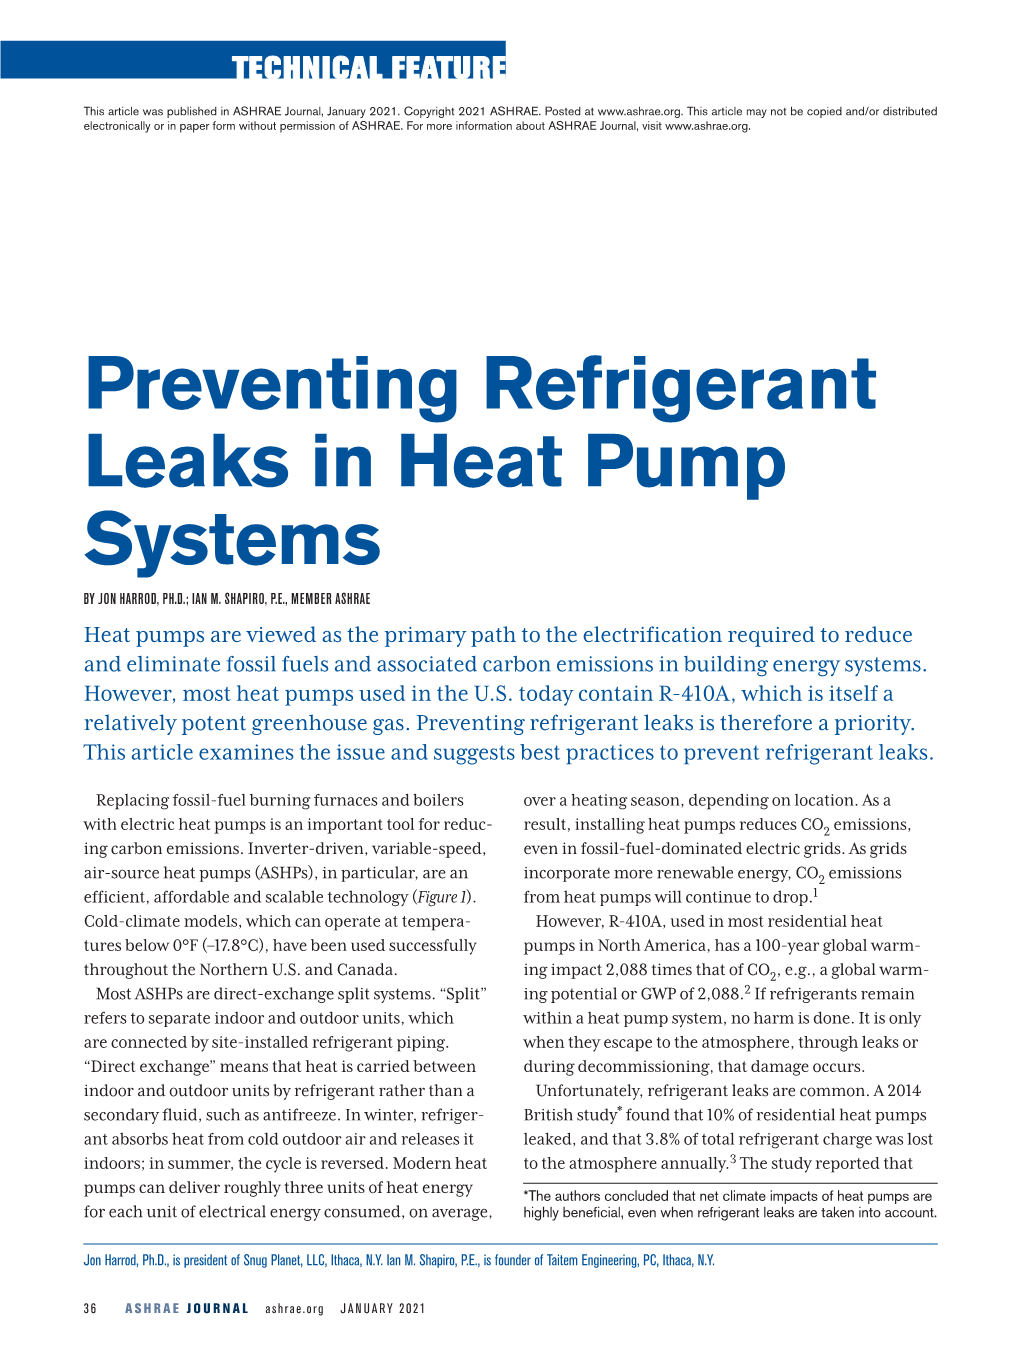 Preventing Refrigerant Leaks in Heat Pump Systems by JON HARROD, PH.D.; IAN M